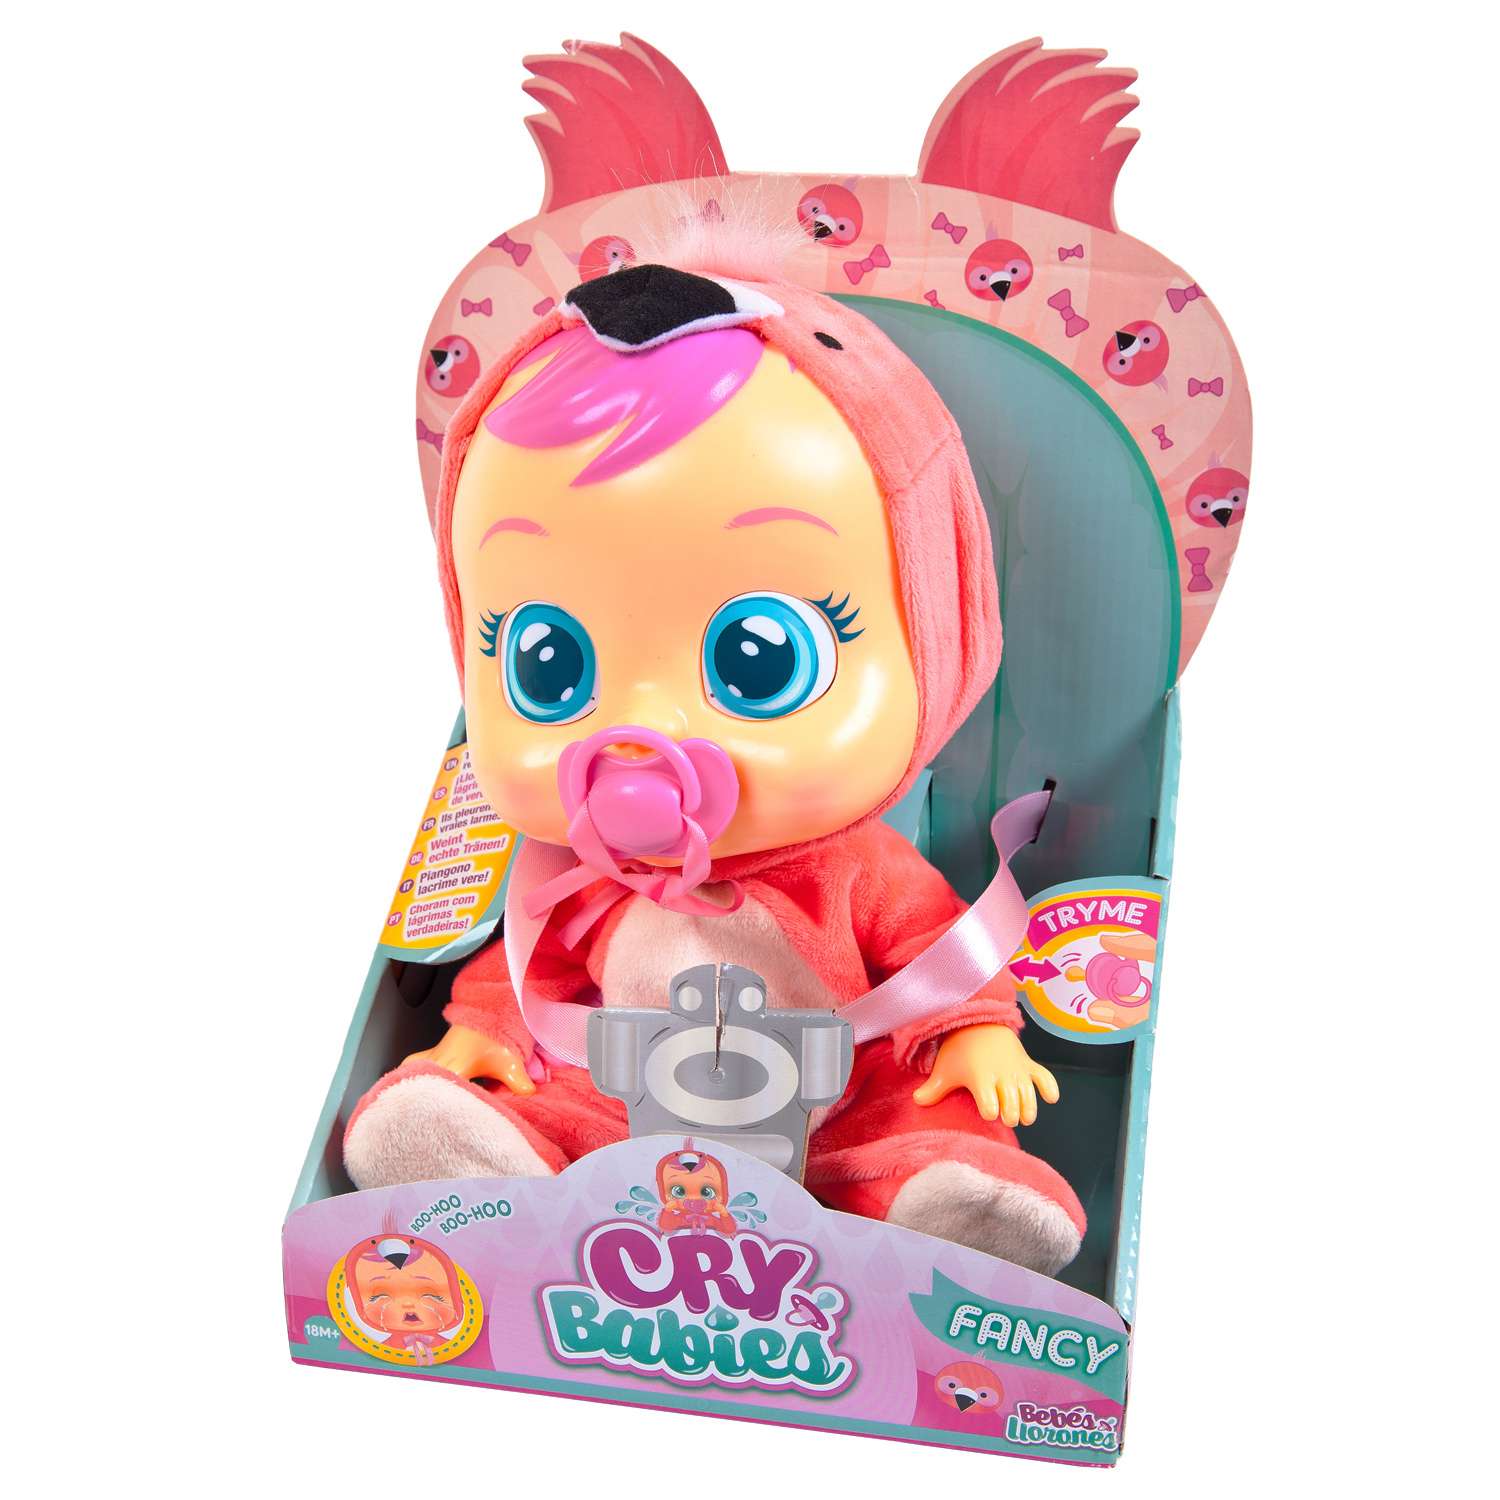 Кукла IMC Toys Плачущий младенец новая серия 31 см 97056-VN - фото 1